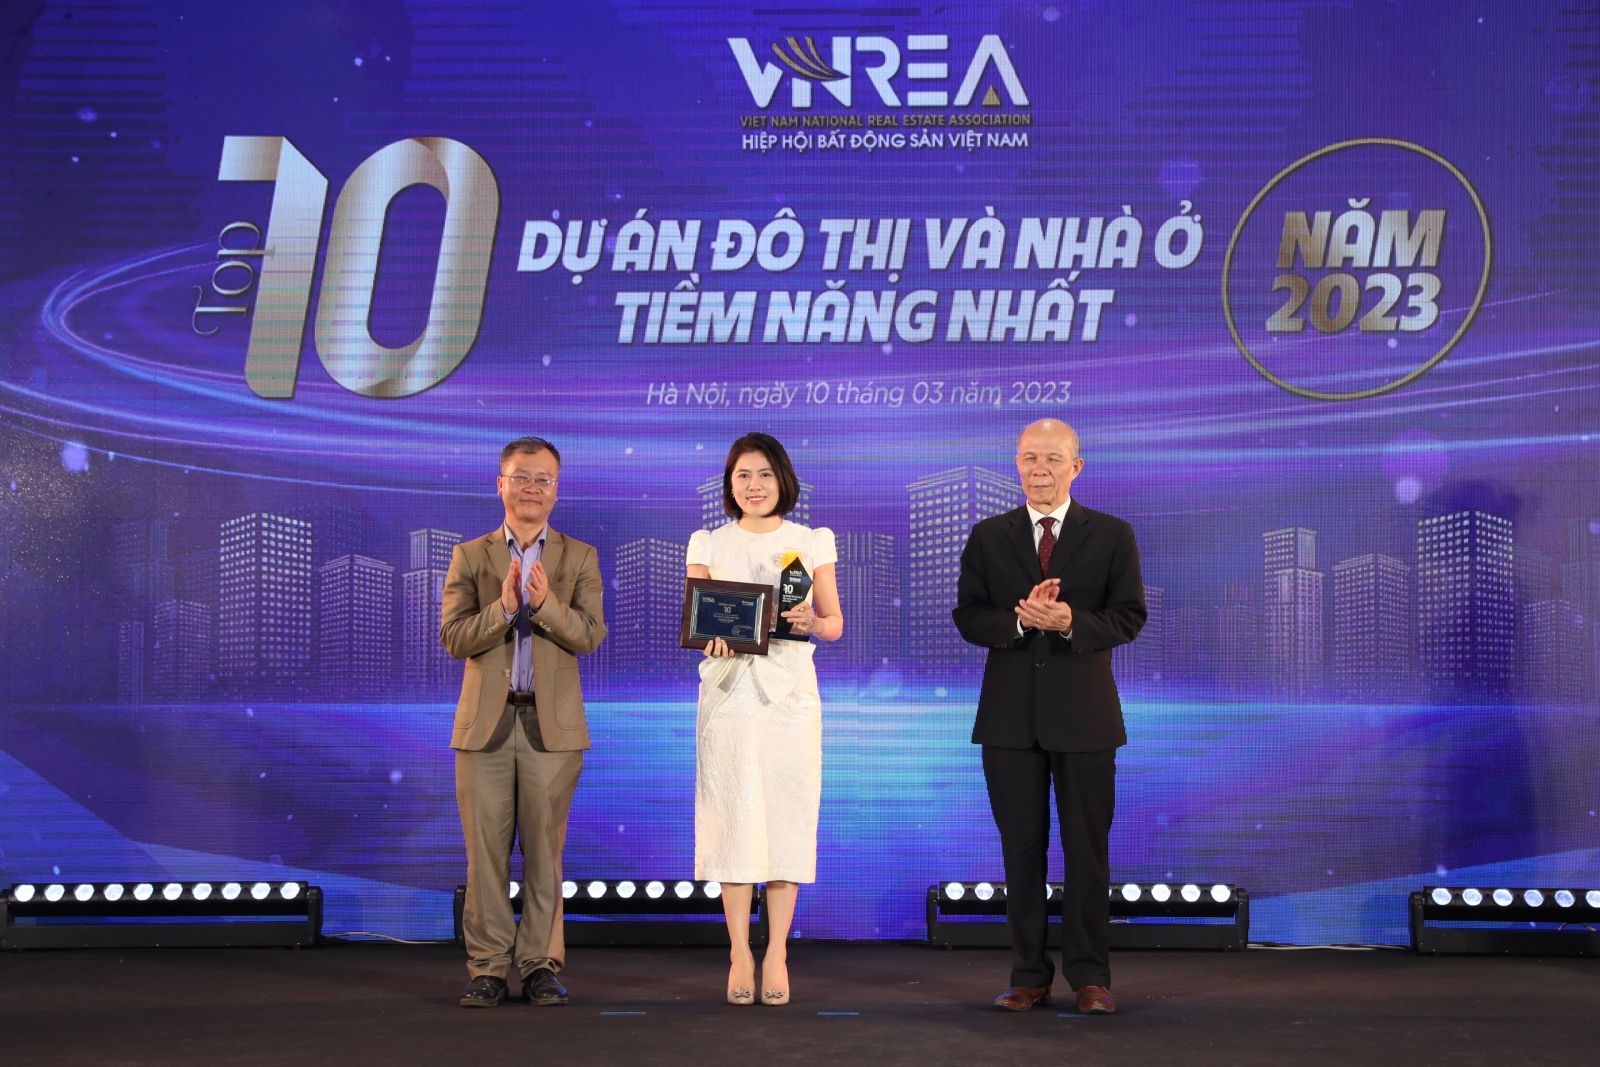 Bà Trịnh Kim Ngần - Giám đốc Kinh doanh Sun Property lên nhận giải Top 10 dự án đô thị và nhà ở tiềm năng nhất năm 2023 cho Sunneva Island.